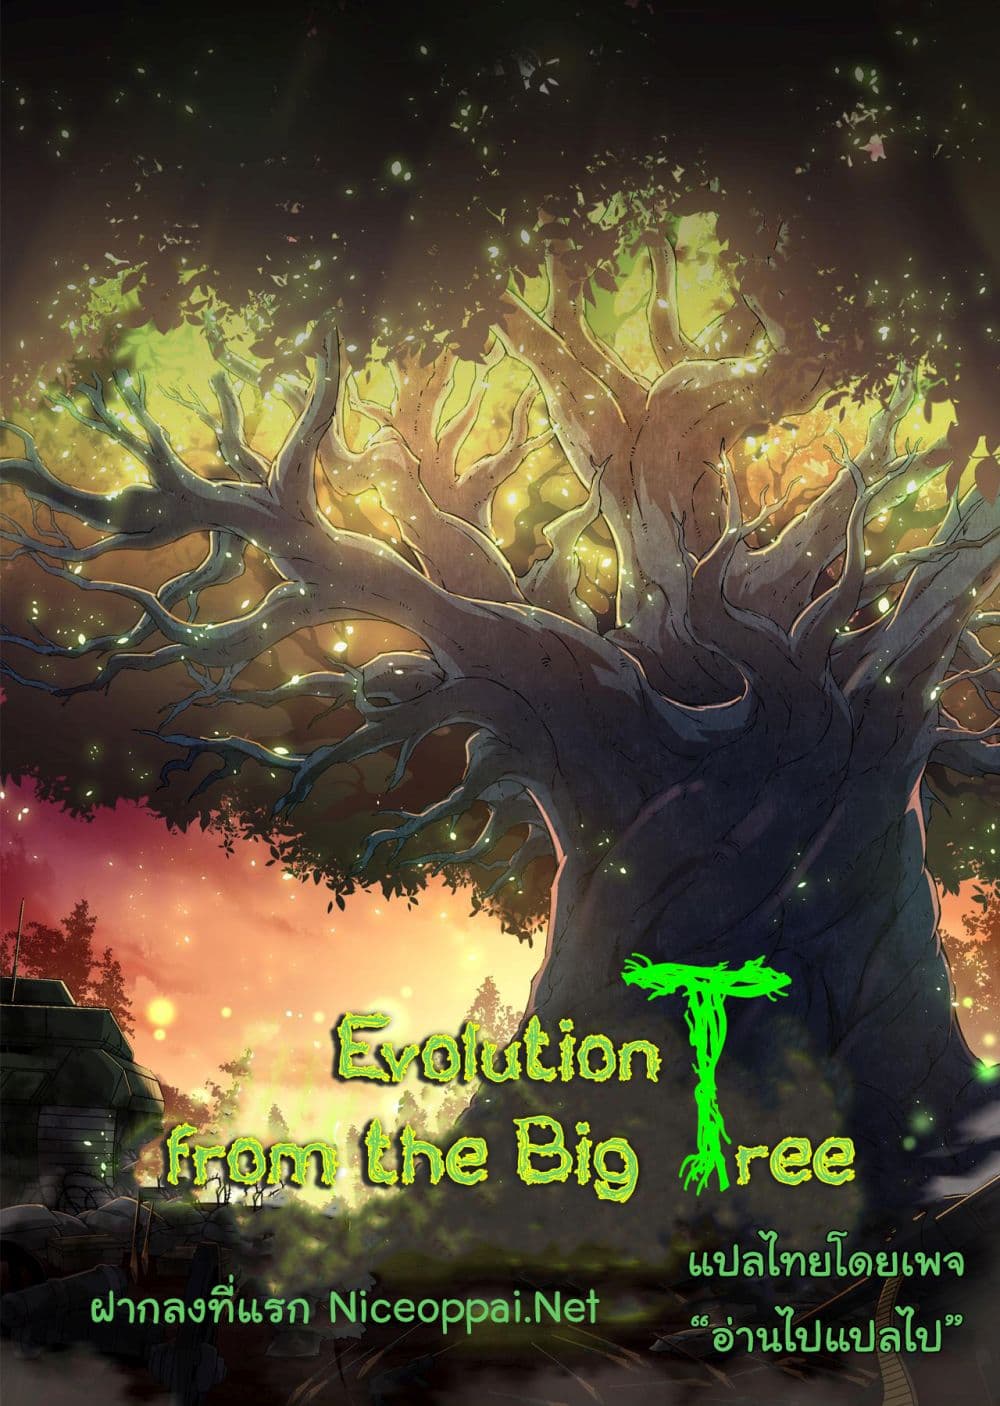 Evolution from the Big Tree Ã Â¸â€¢Ã Â¸Â­Ã Â¸â„¢Ã Â¸â€”Ã Â¸ÂµÃ Â¹Ë† 2 (40)